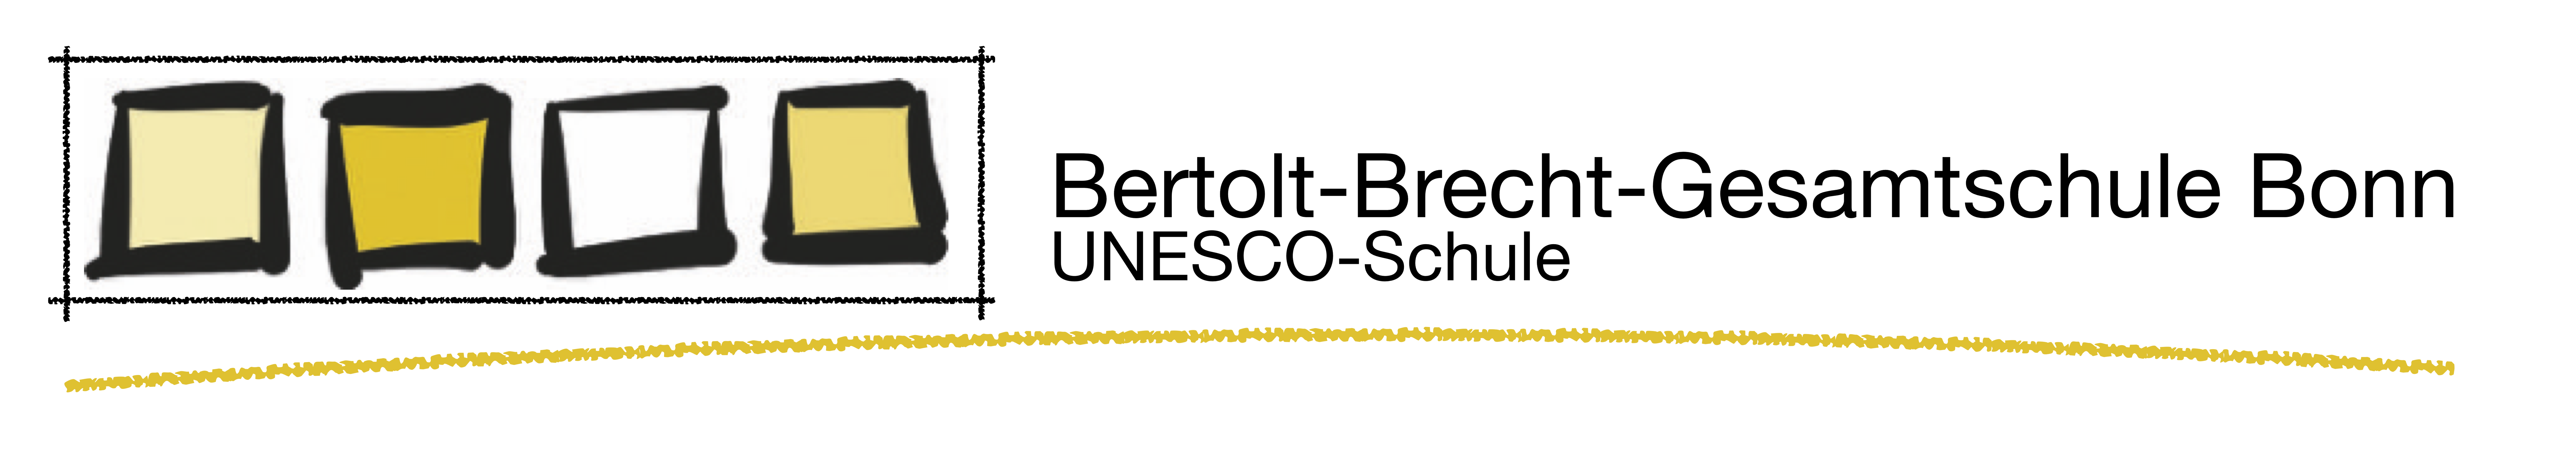 Homepage der Bertolt-Brecht-Gesamtschule Bonn